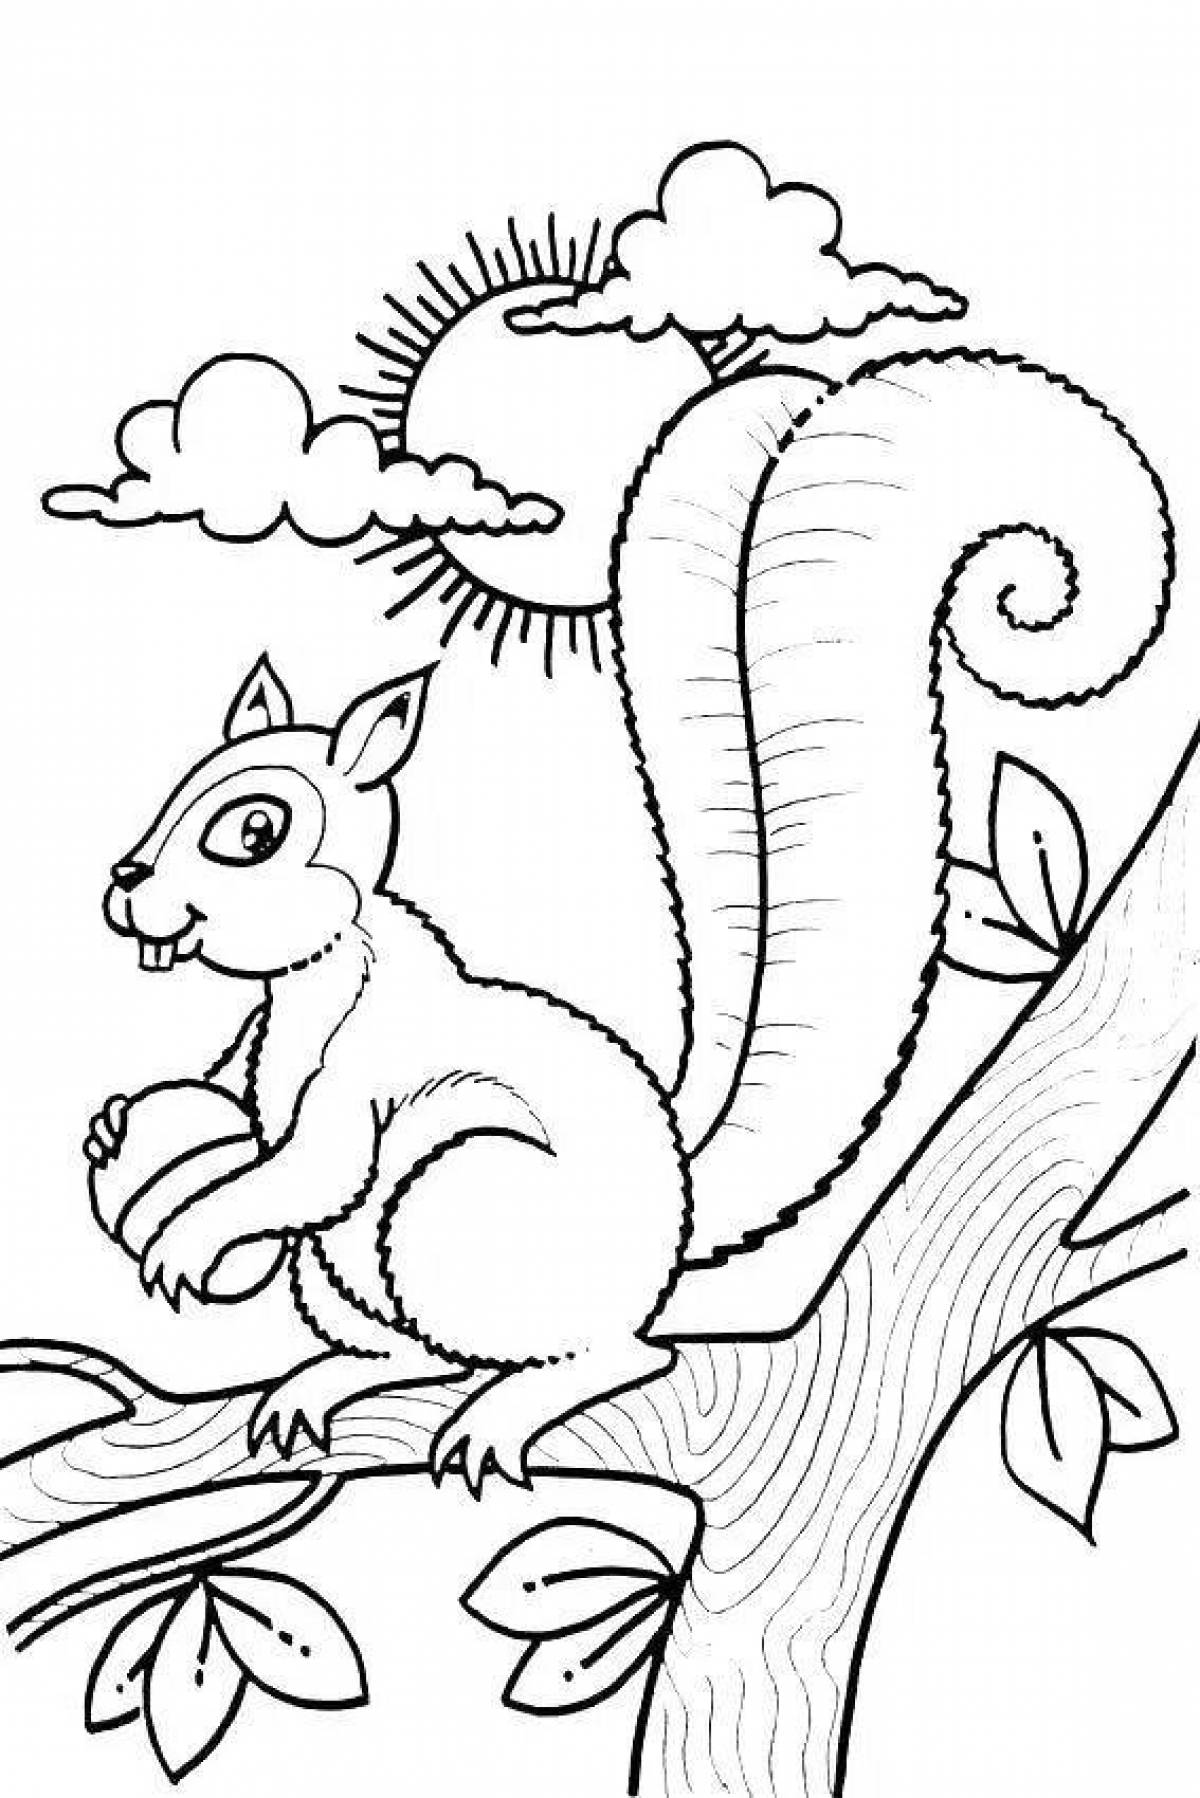 Coloring book smart squirrel